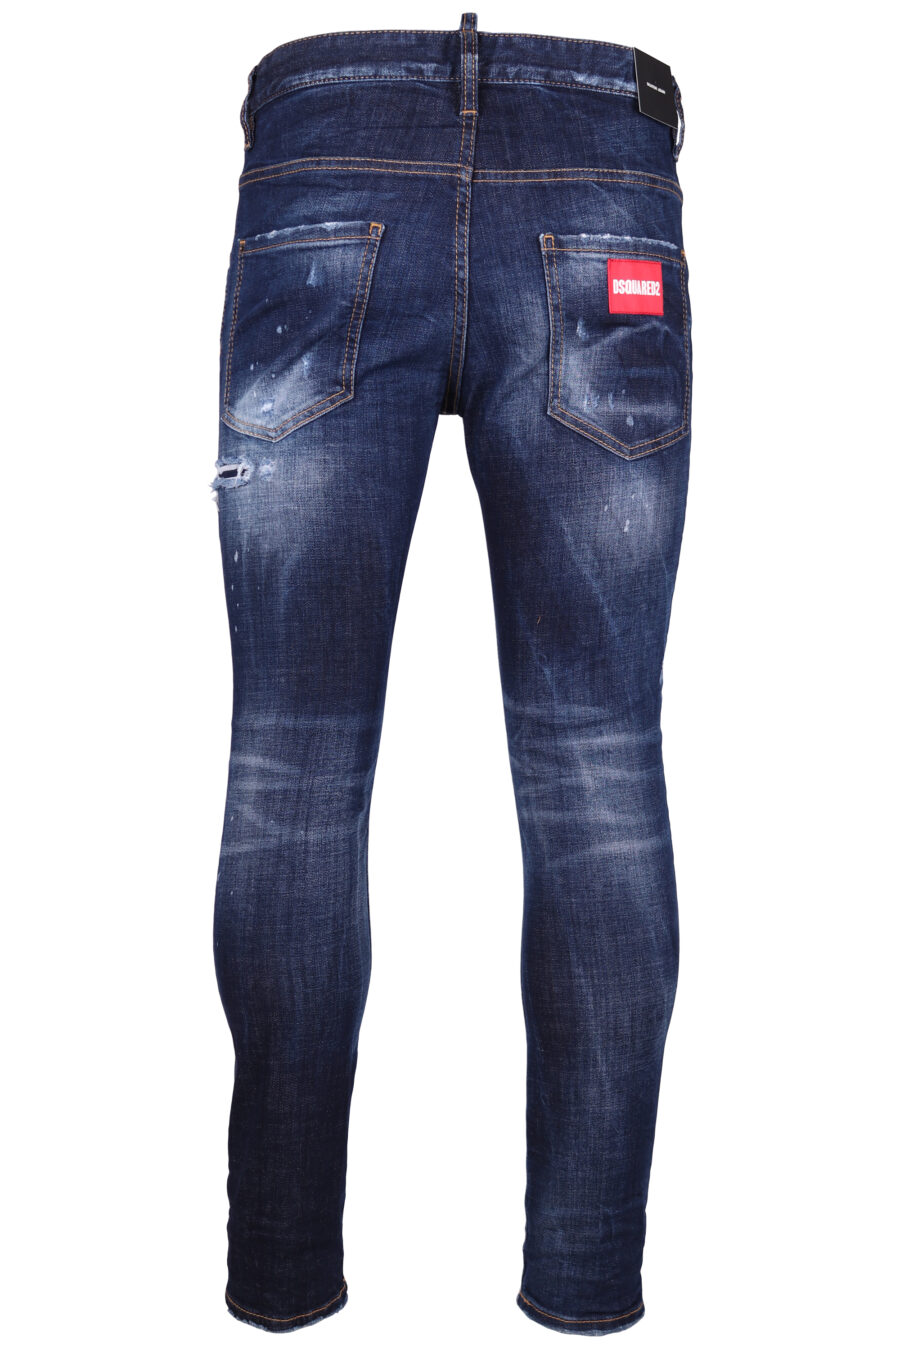 Pantalón vaquero "Skater" azul oscuro semiroto con detalle rojo - IMG 9292 1